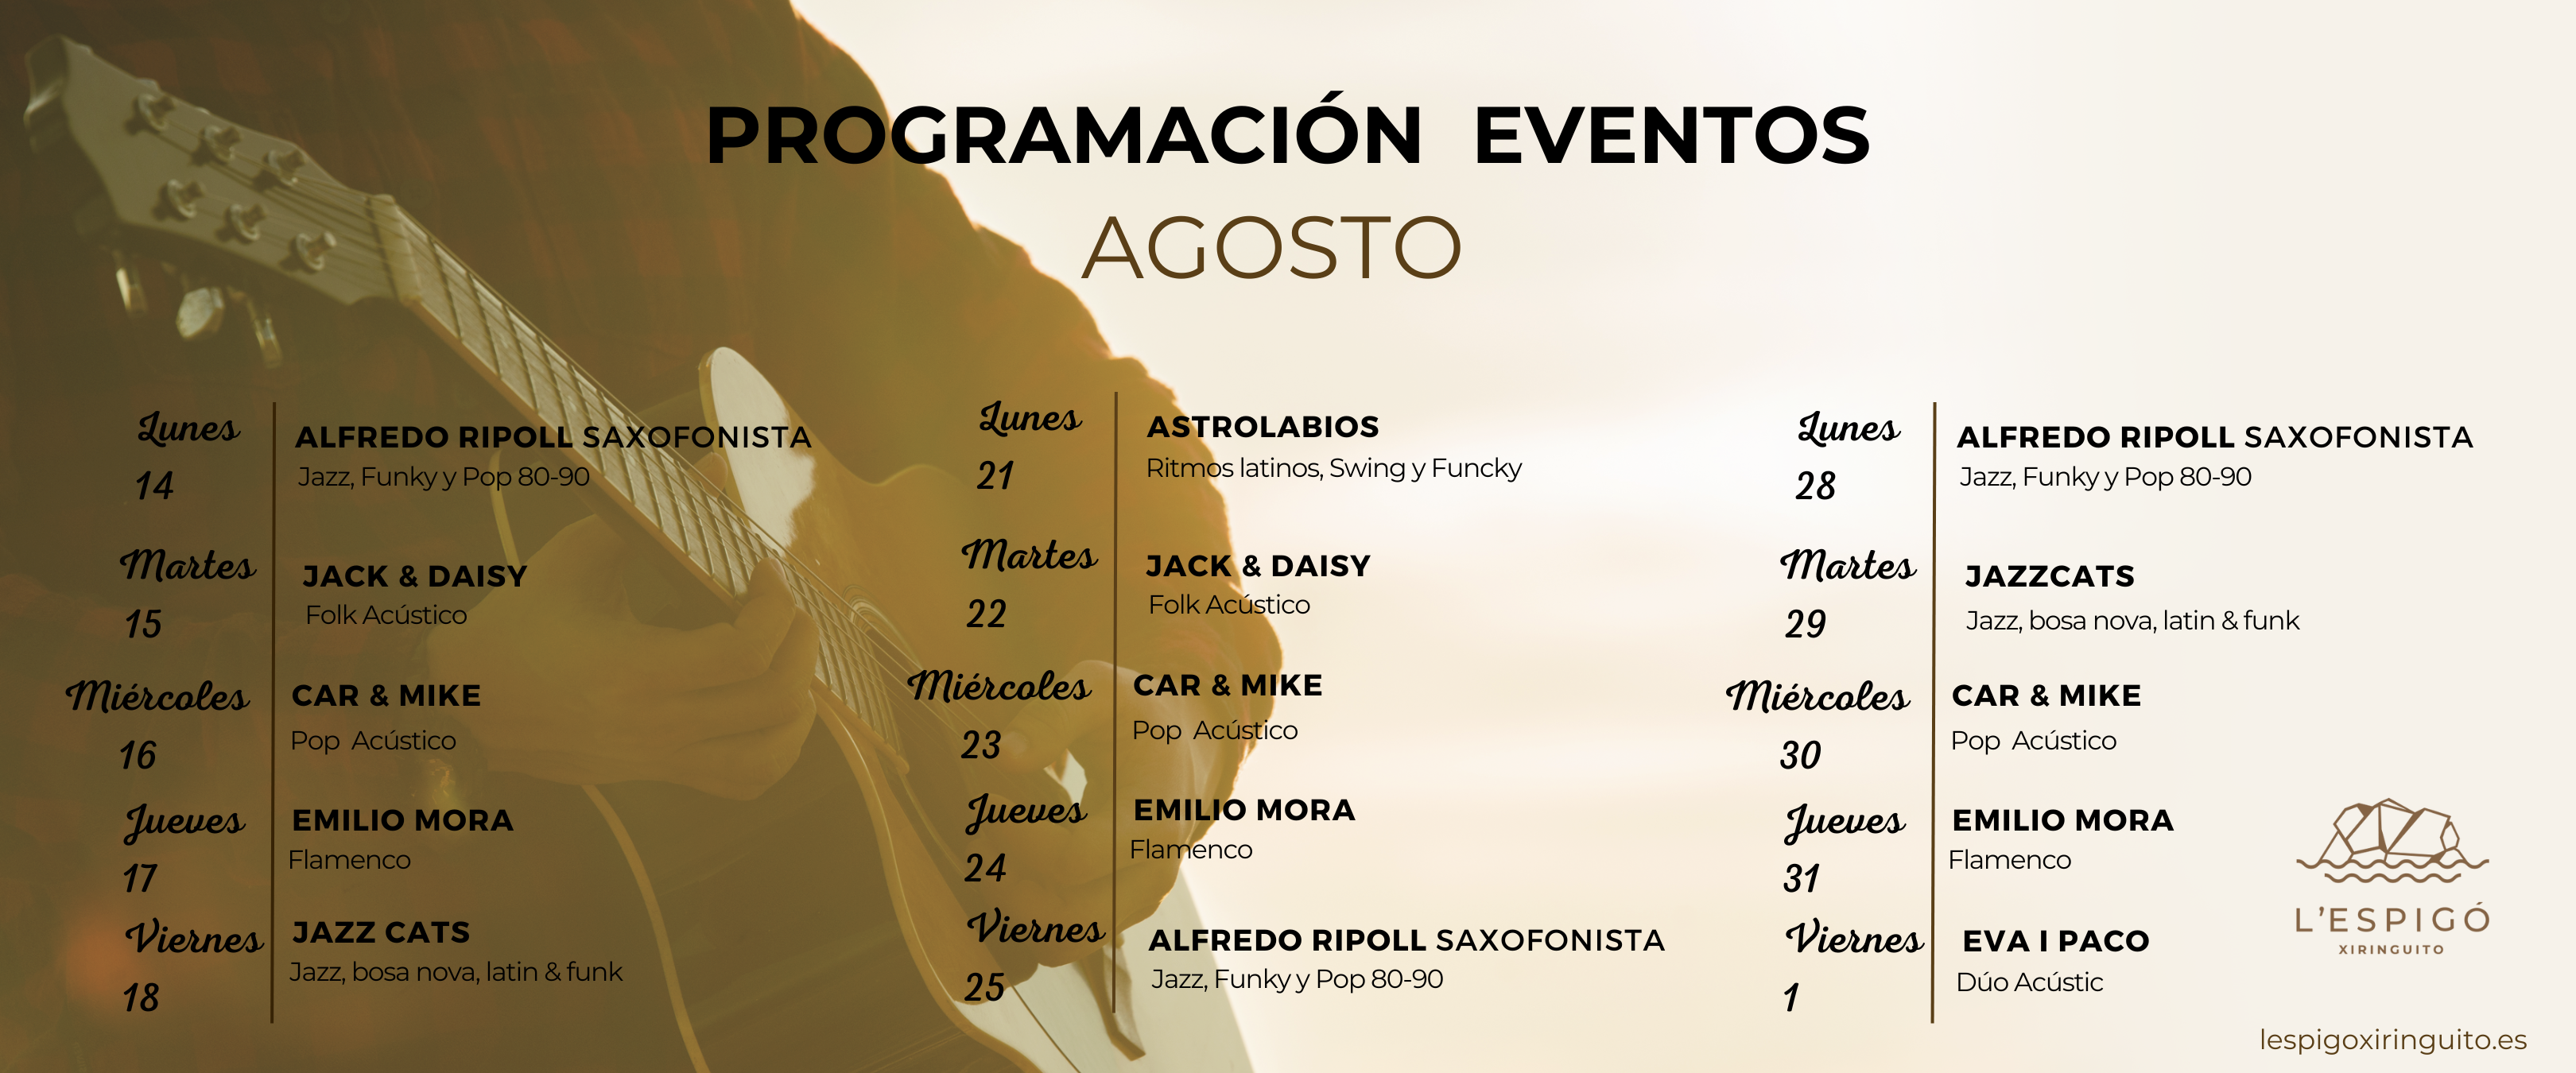 Events Espigó Xiringuito